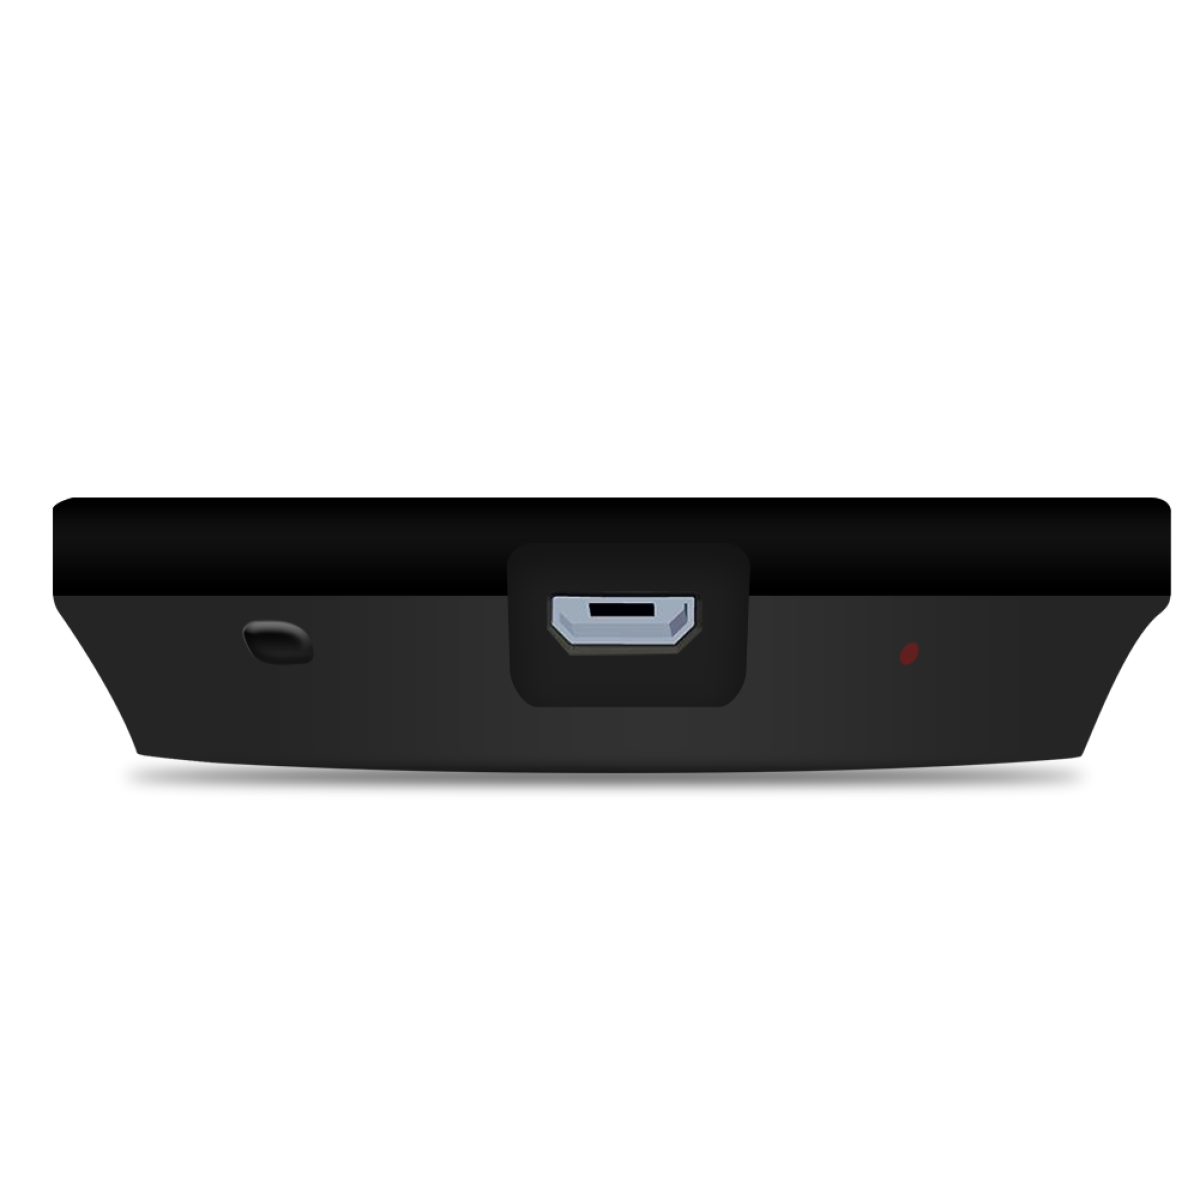 HDMI-Dongle-Empfänger Empfänger 1080P HDMI Dongle INF Kabelloser 2.4G/5G